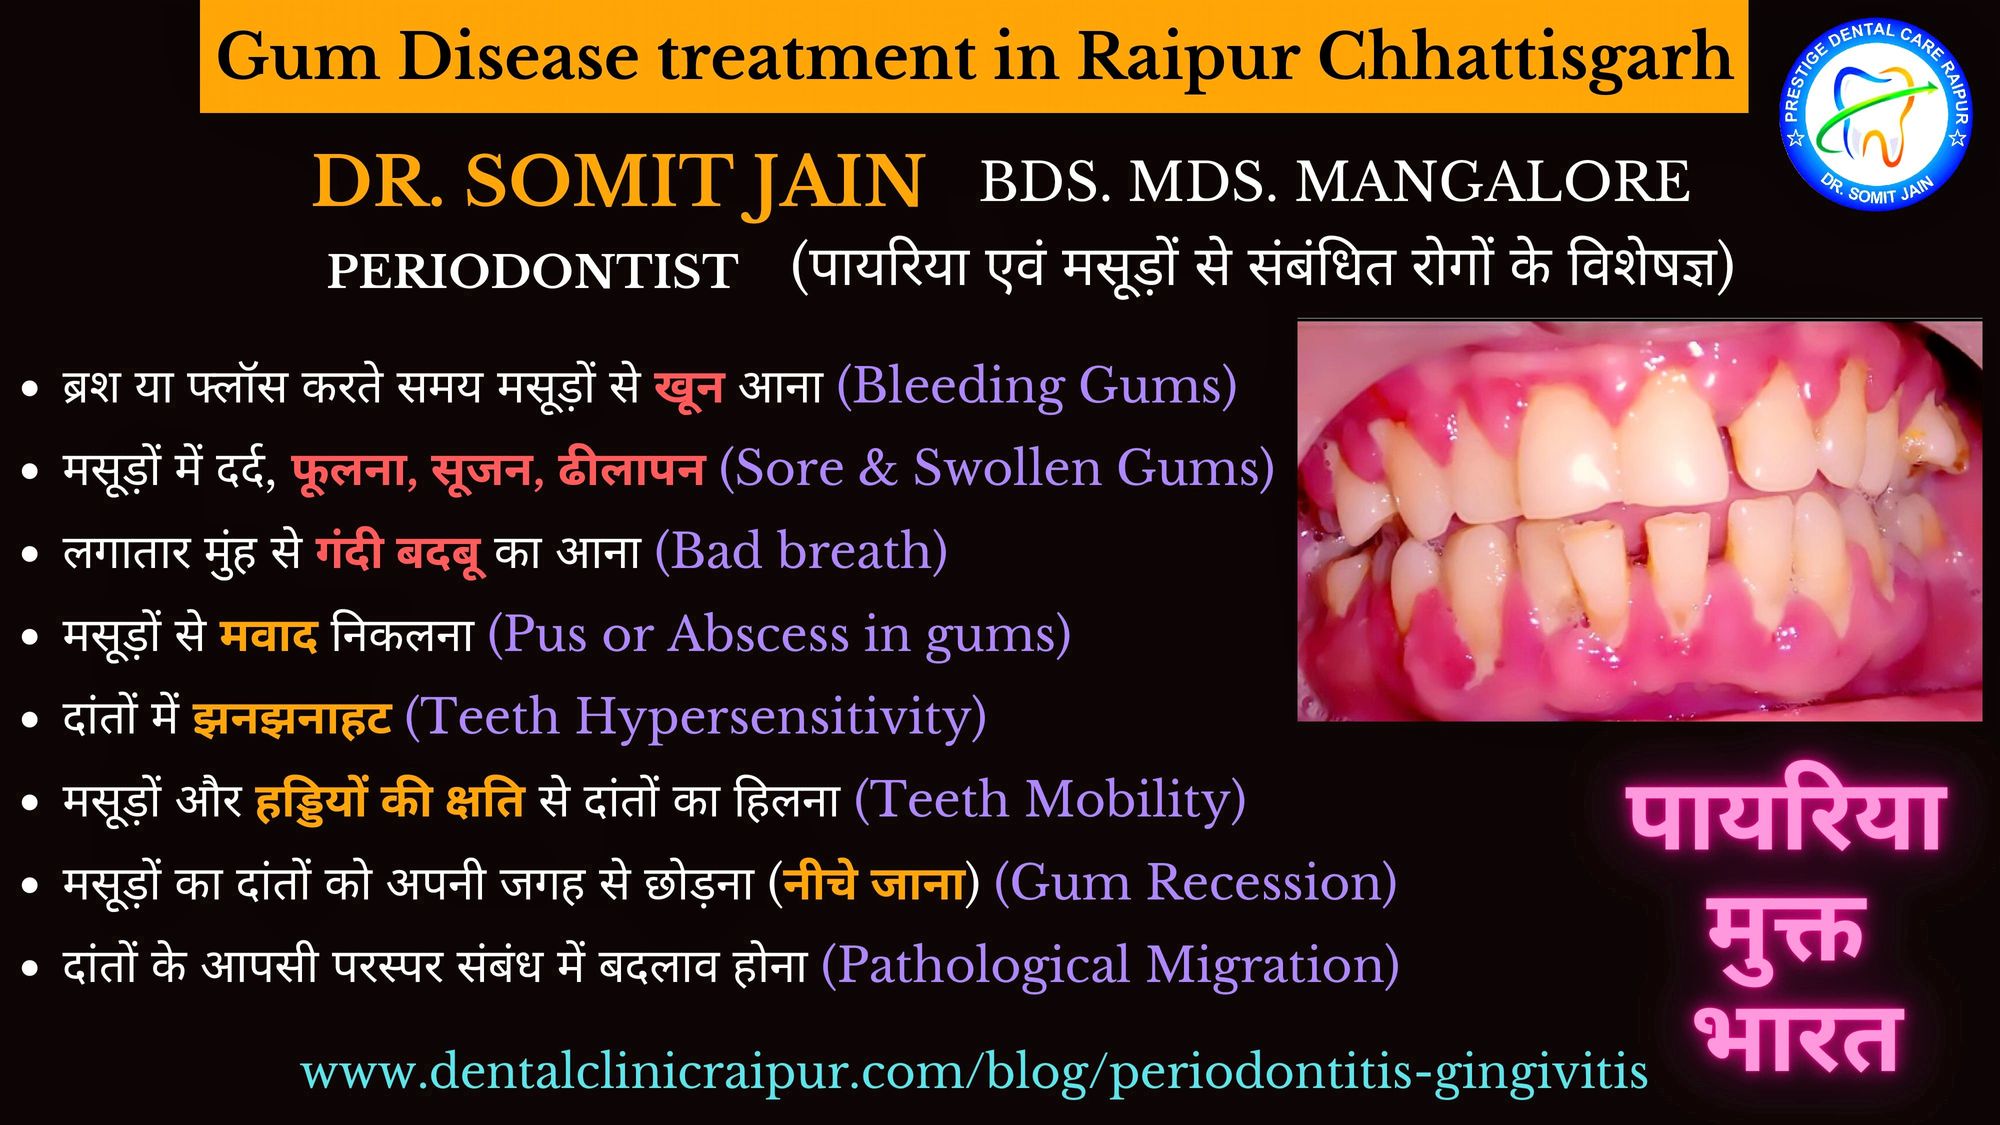 Gum Disease treatment in Raipur Chhattisgarh